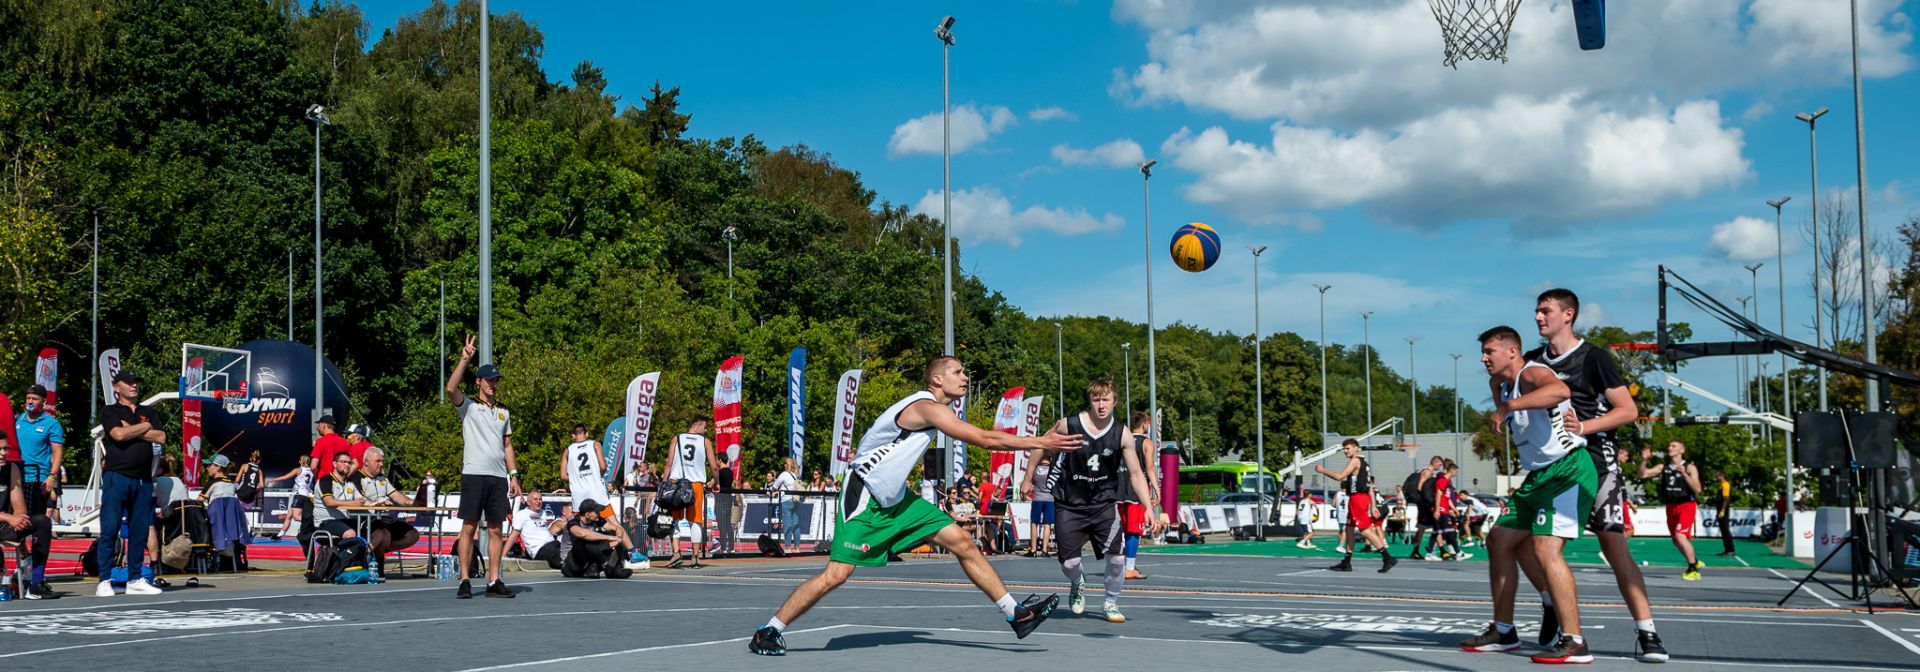 Koszykarz wkładający piłkę do kosza podczas turnieju 3x3 Gdynia 